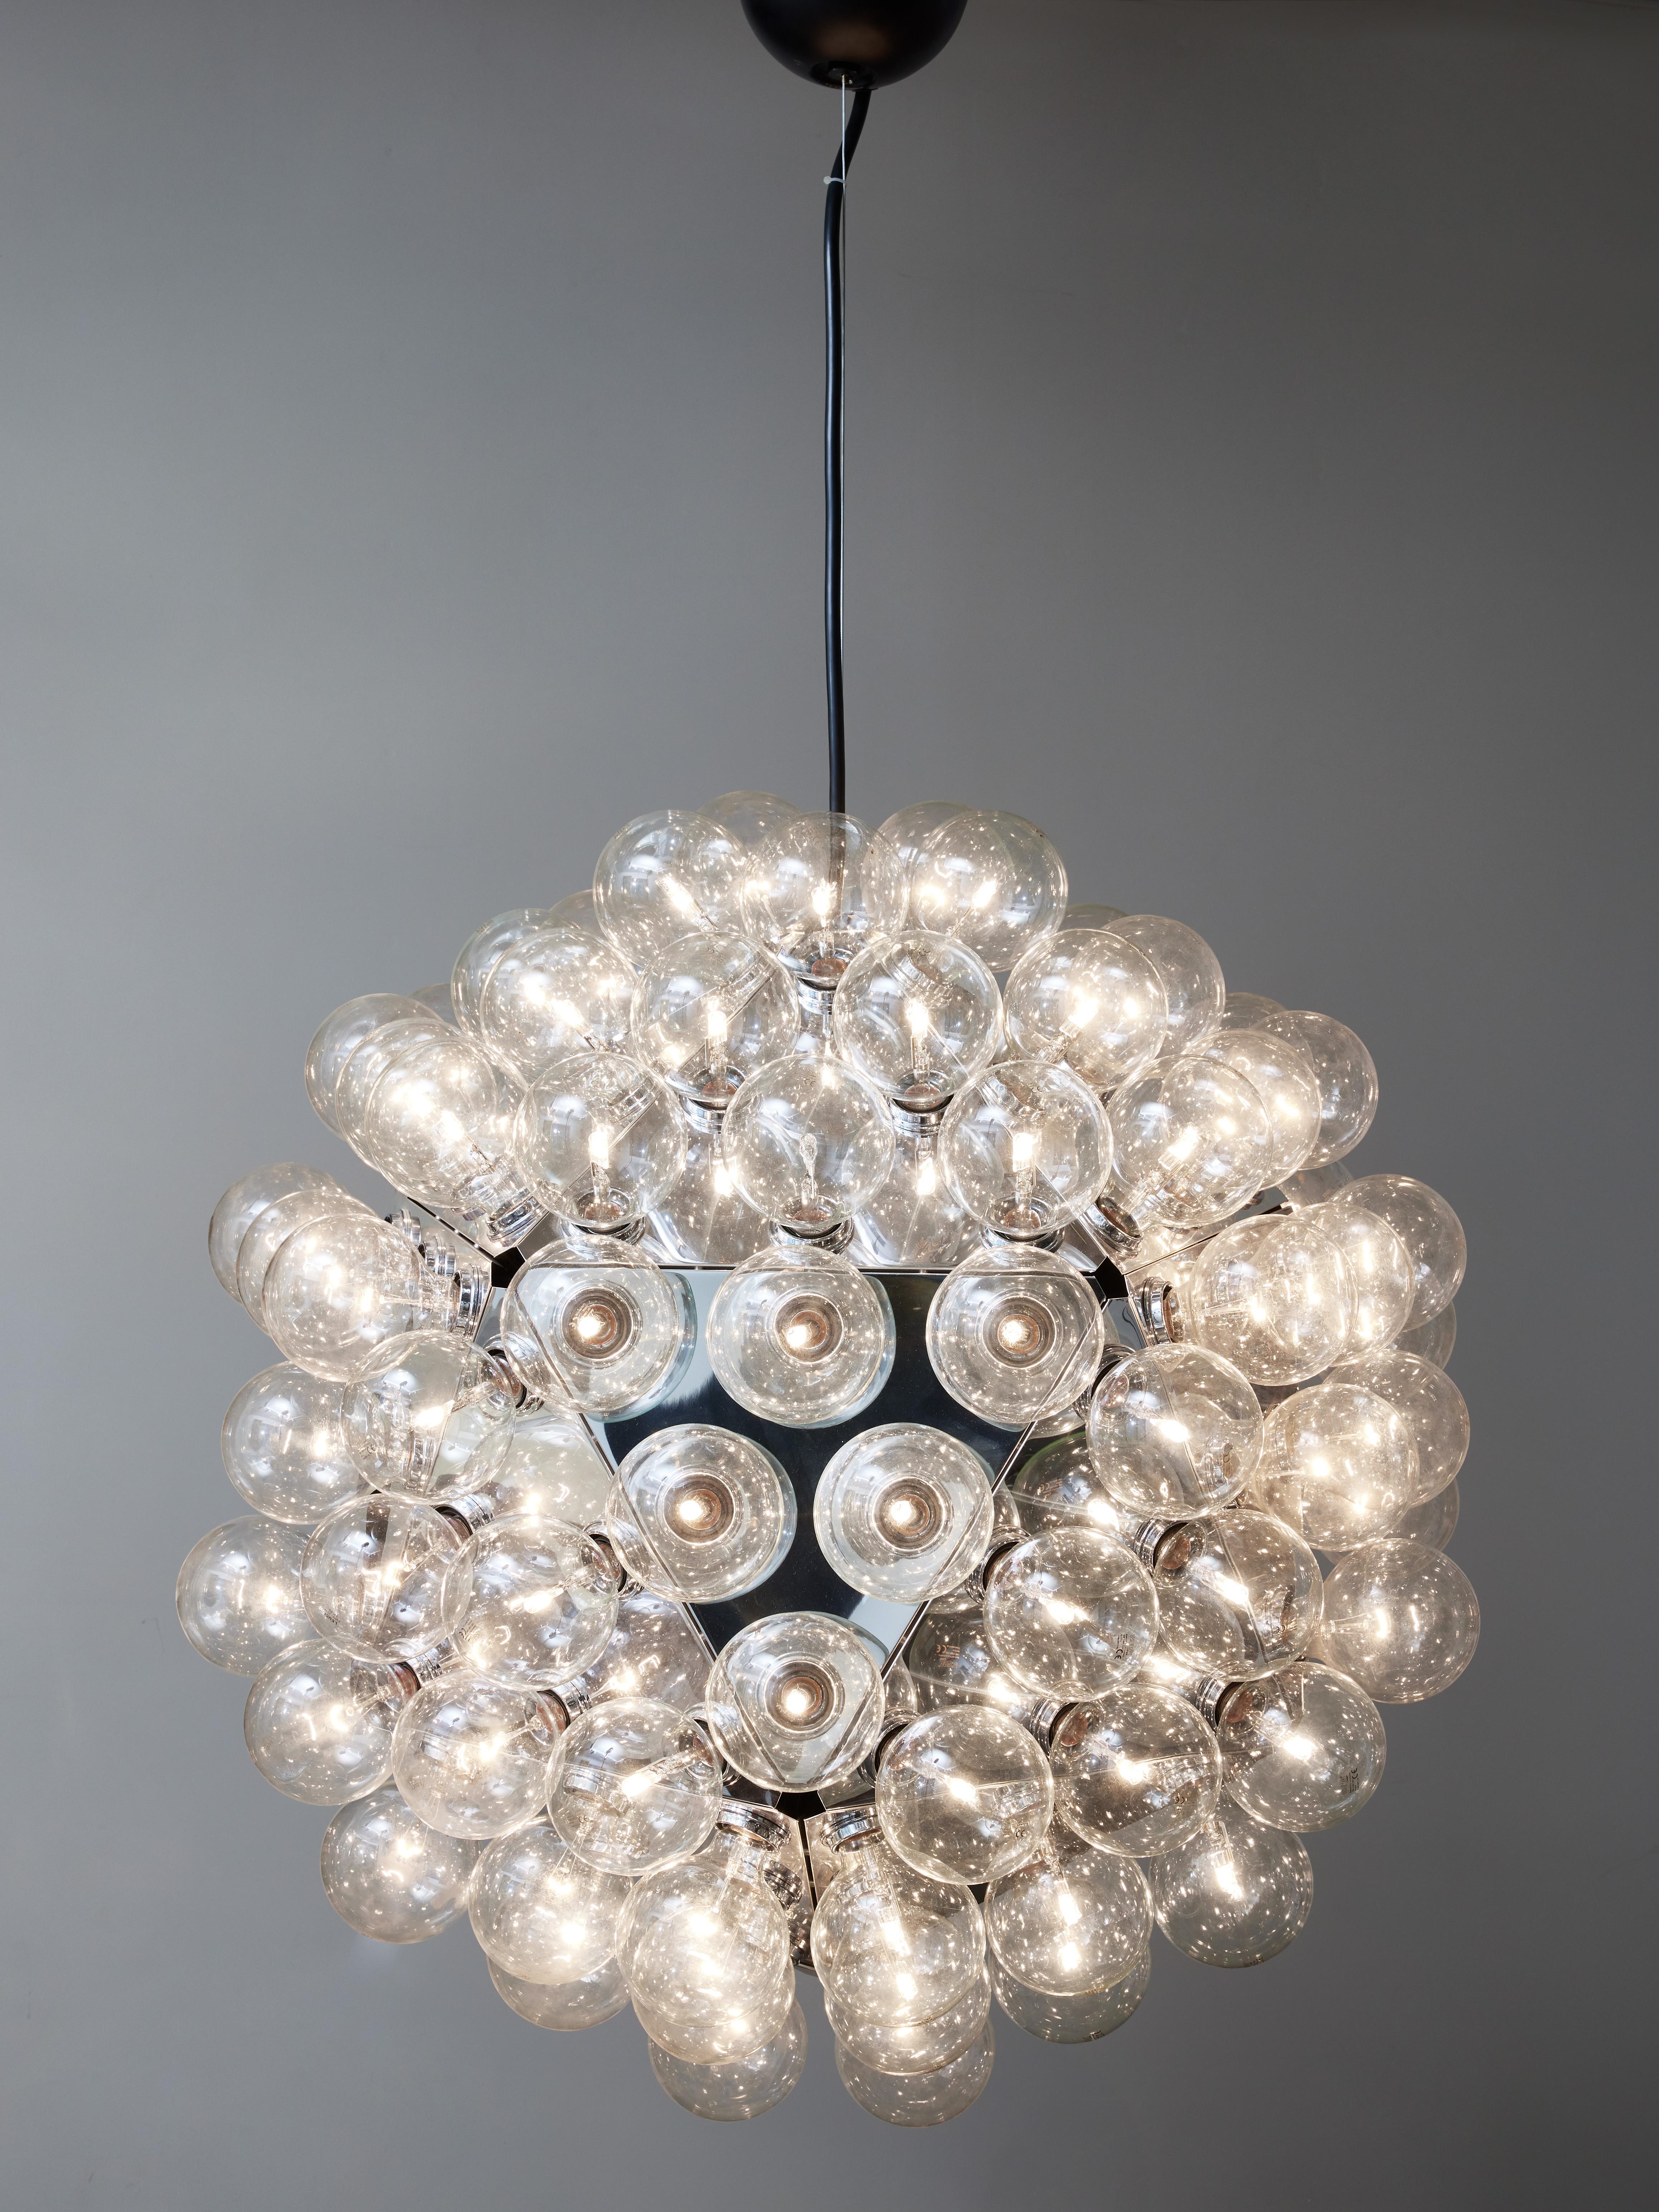 Seltenere Version der Taraxacum 88, dies ist die Version mit 120 Leuchten aus den frühen 2000er Jahren des klassischen Achille Castiglioni-Designs von Flos. Hergestellt aus Platten aus geformtem Aluminium, die mit 120 großen Glühbirnen bedeckt sind